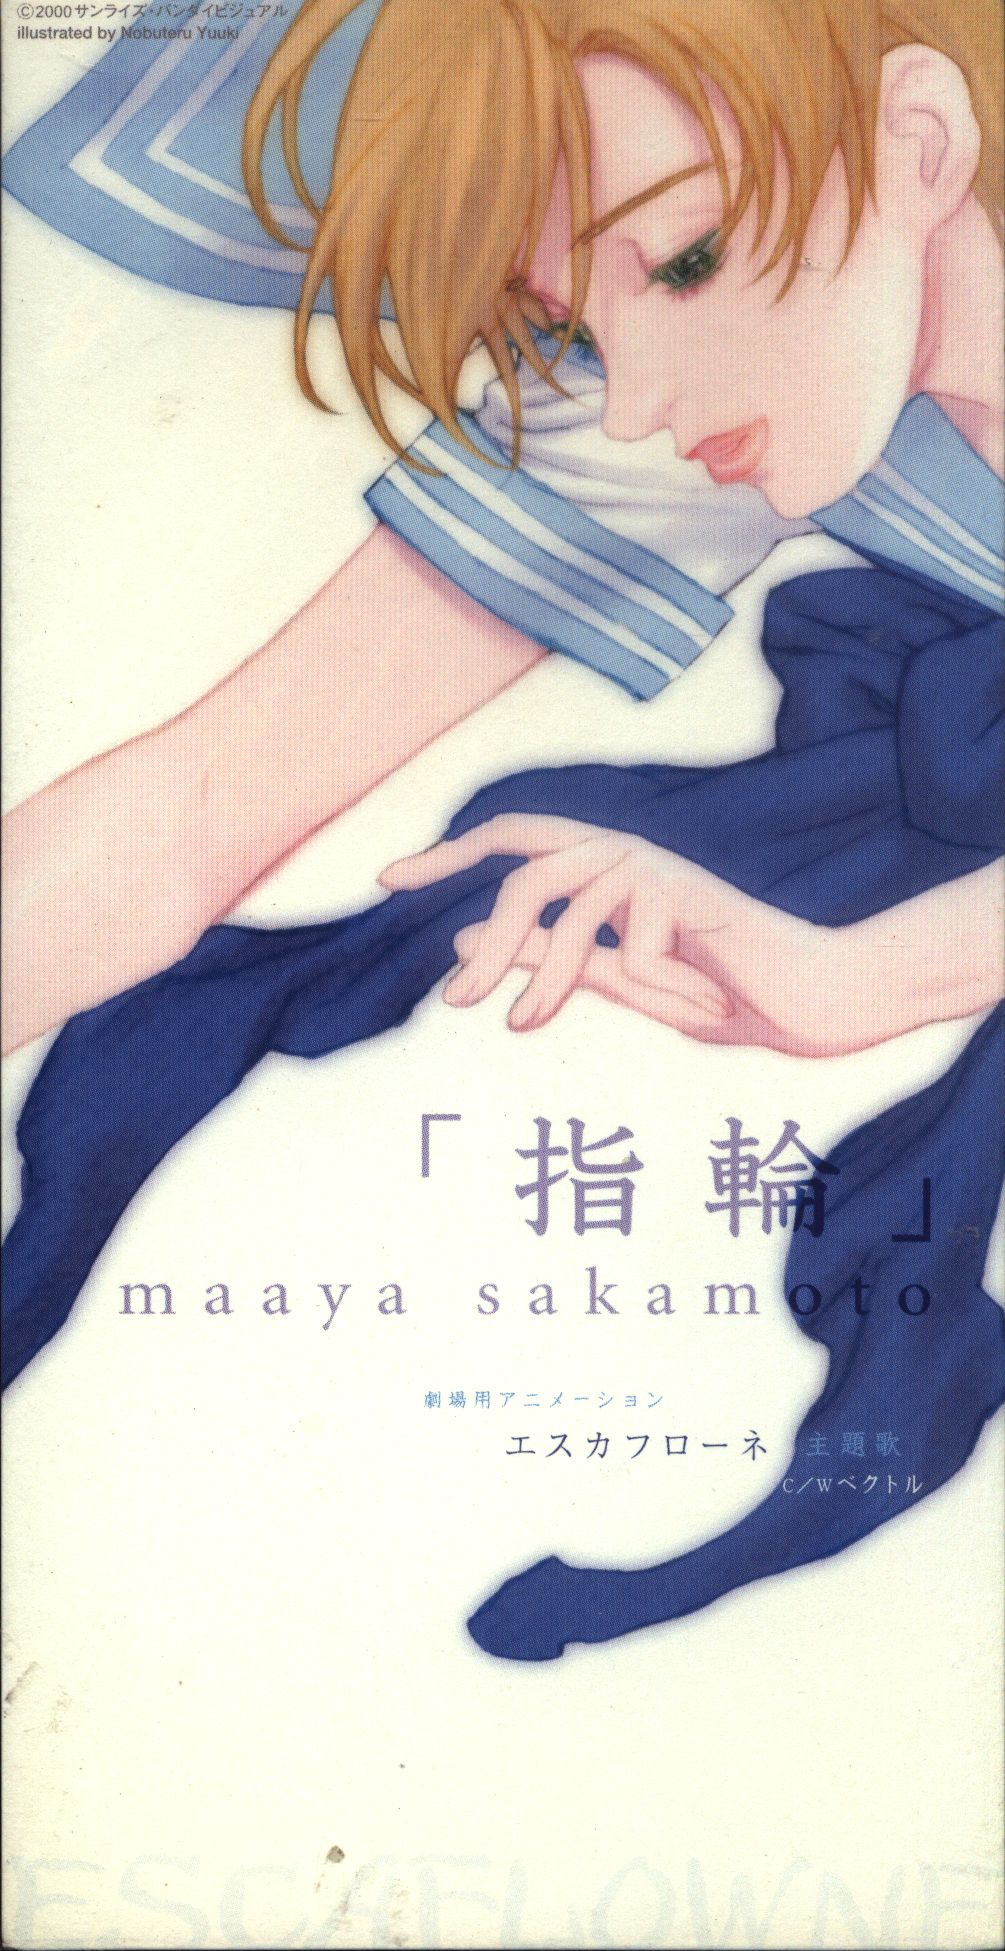 Anime 8Cm CD Maaya Sakamoto ring | Mandarake Online Shop